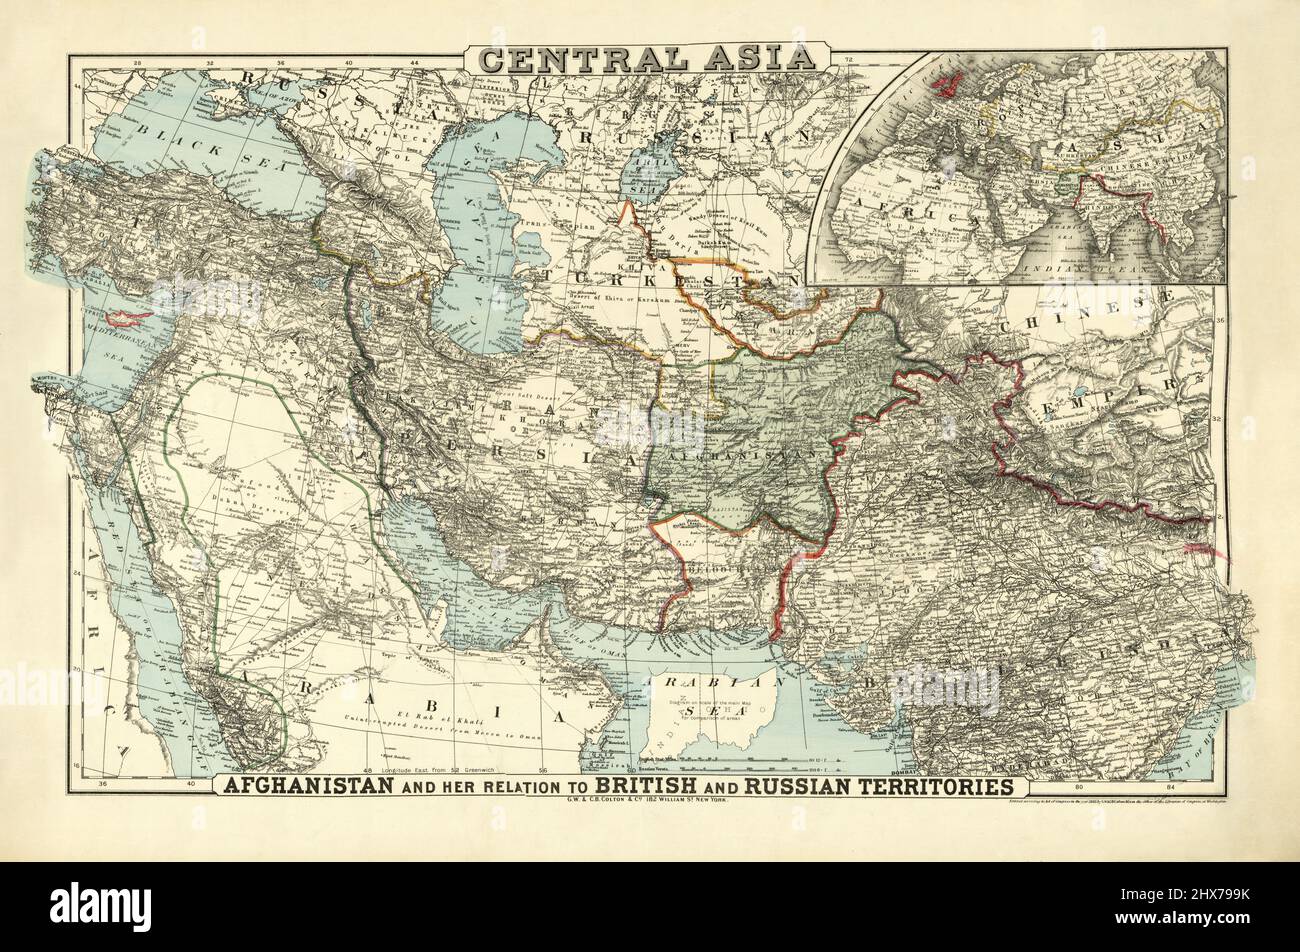 Zentralasien von G.W. & C. B. Colton & Co. 1885. Naher Osten - Südasien - Arabien. 1885. Stockfoto